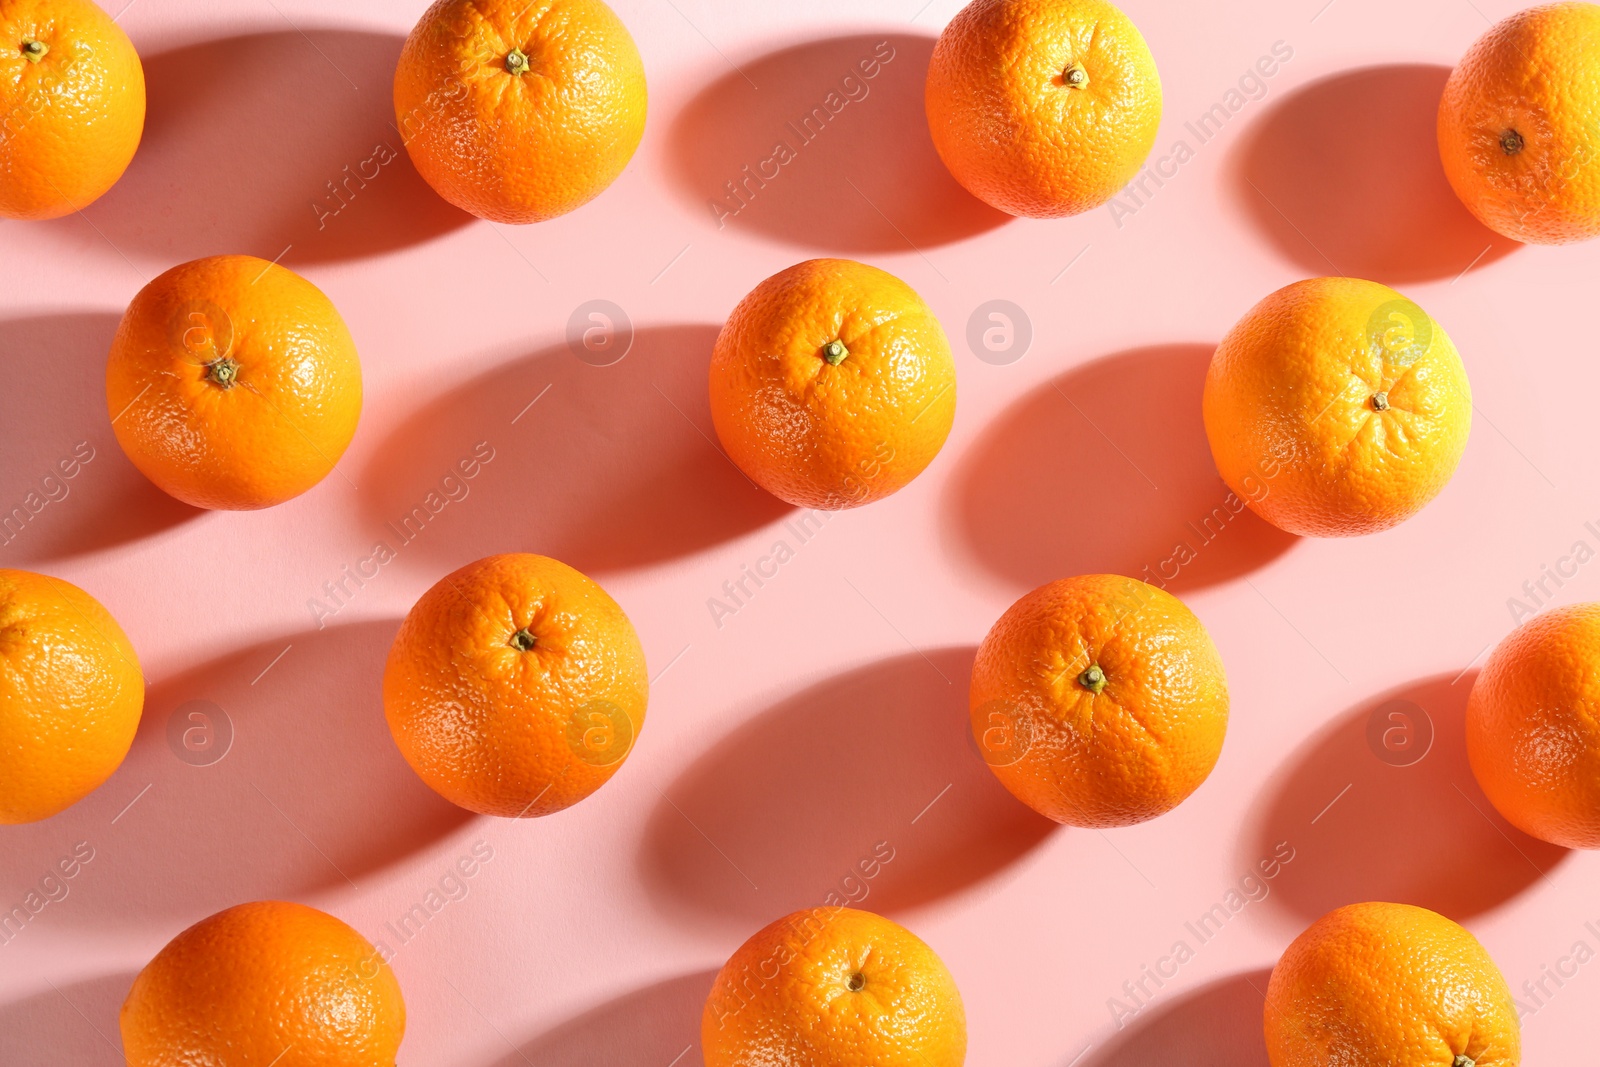 Photo of Whole fresh ripe oranges on pink background, flat lay